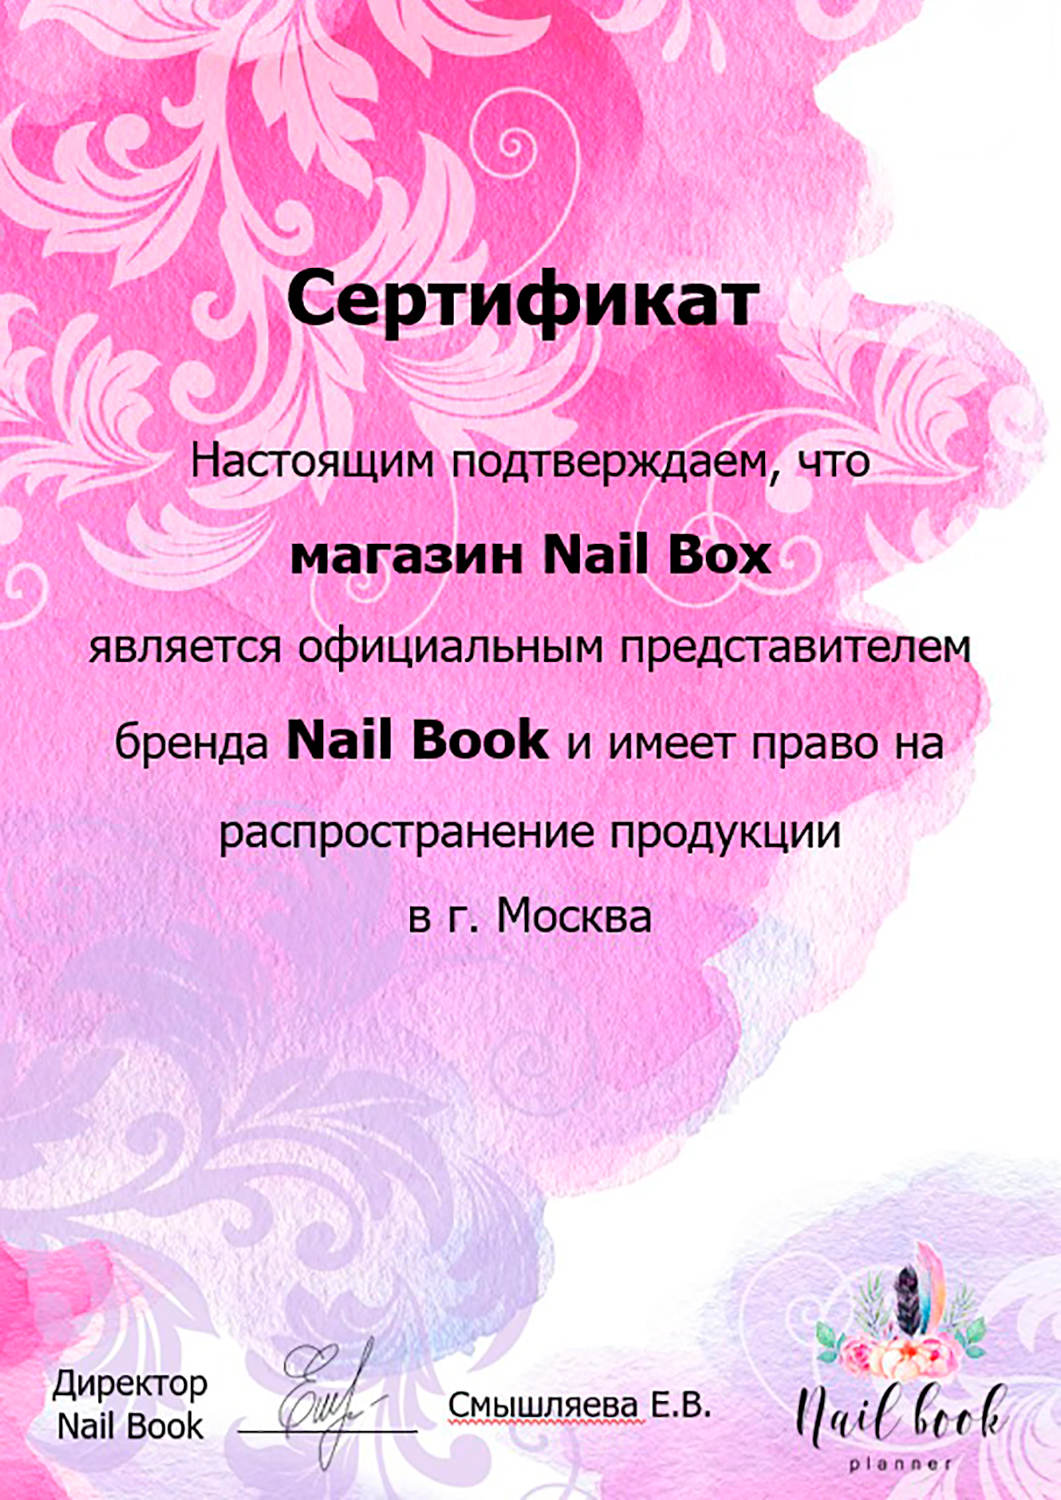 Nail Book